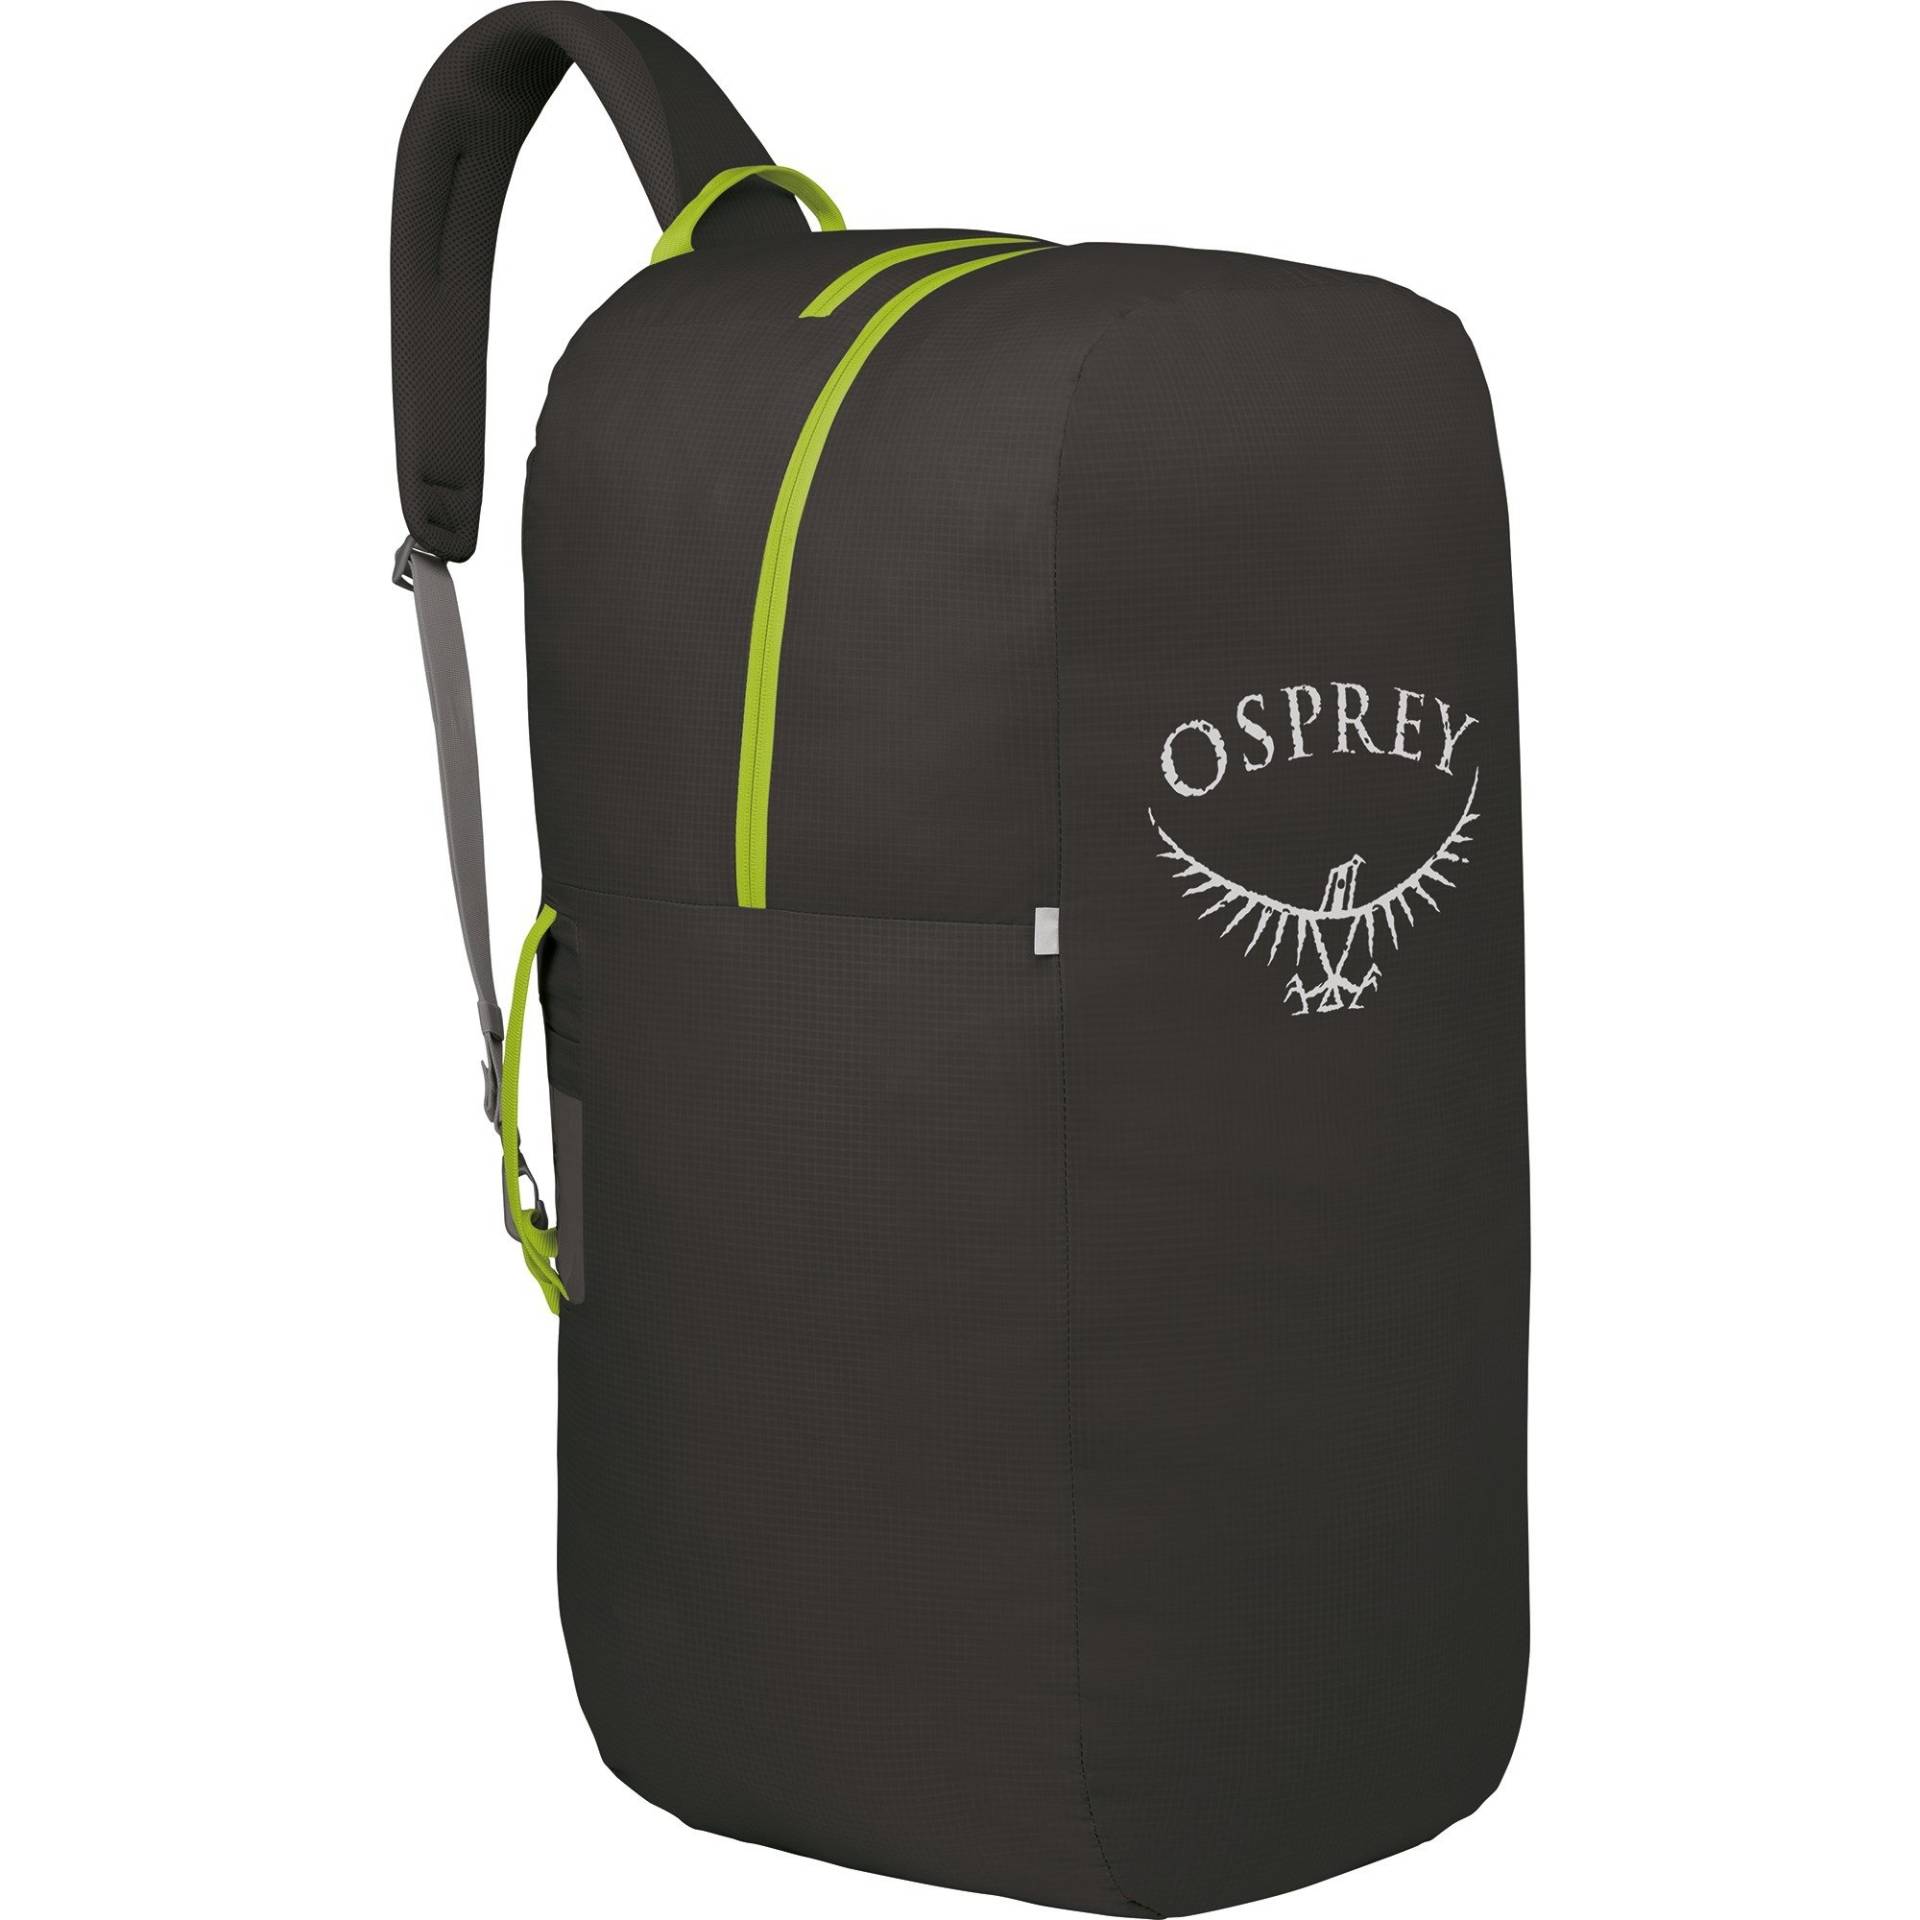 Airporter Small, Tasche von Osprey